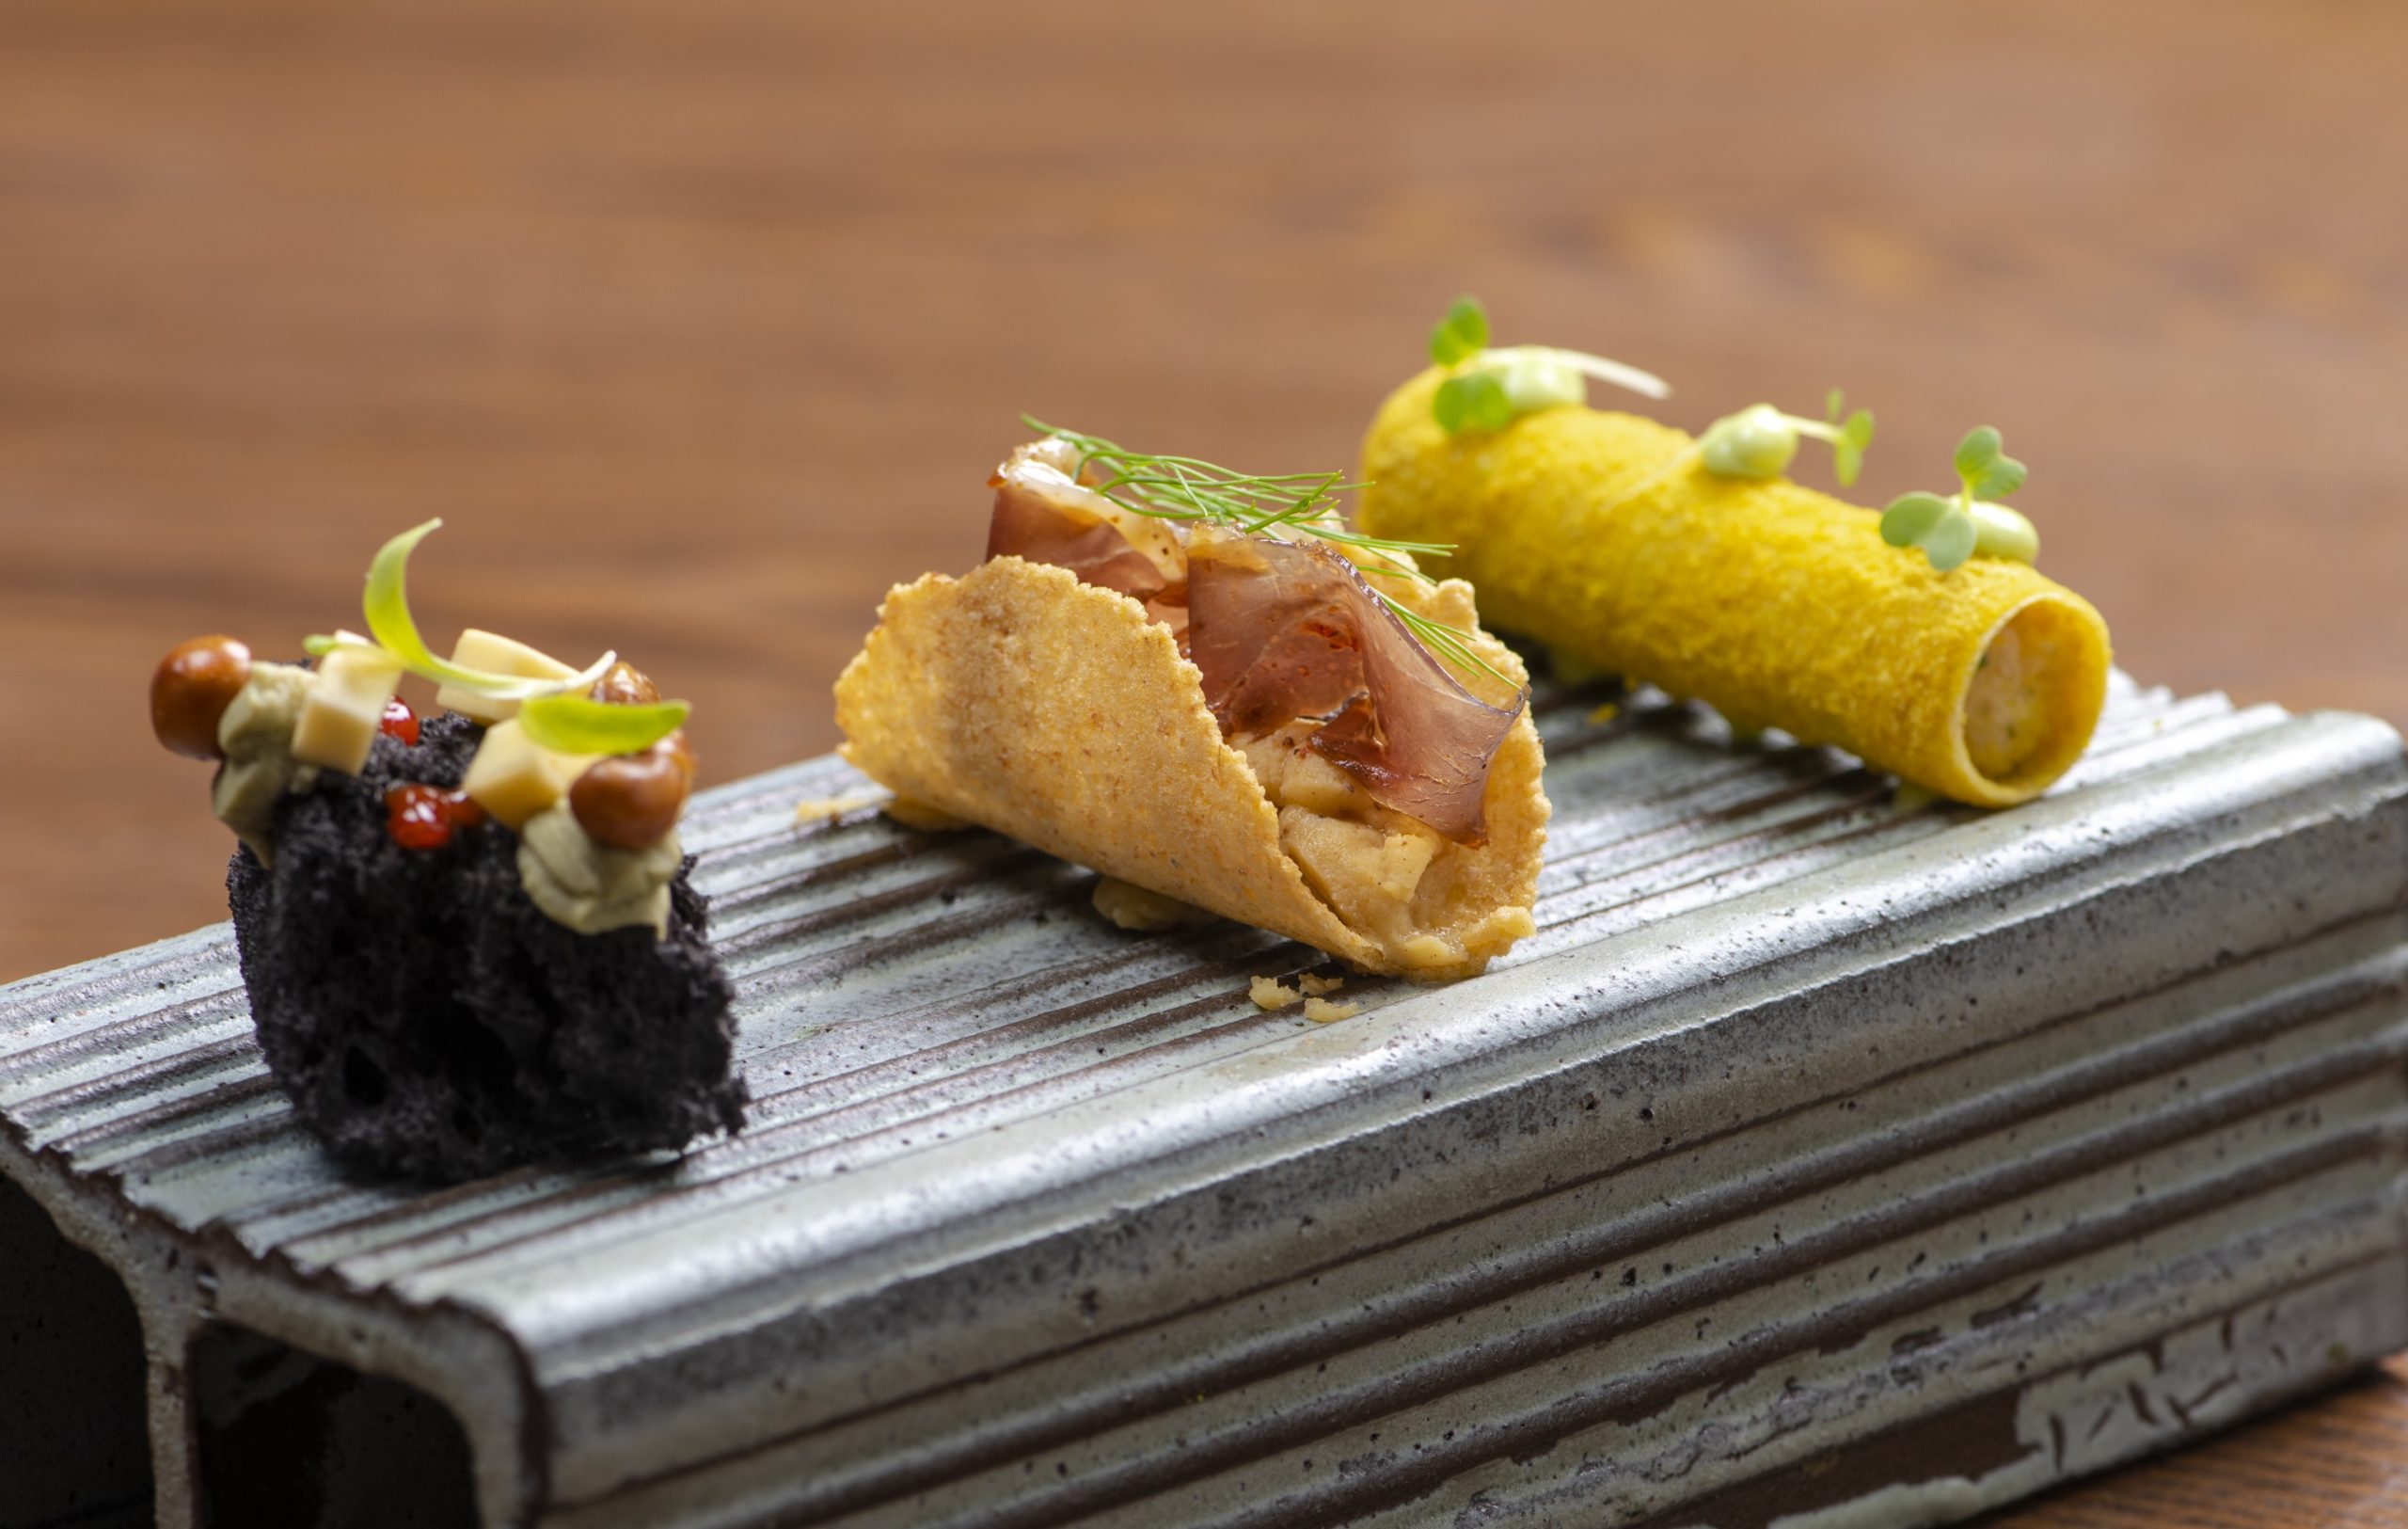 Restaurante Mayú: na imagem, há três rolinhos que representam insumos do mar, do sertão e da serra cearense.